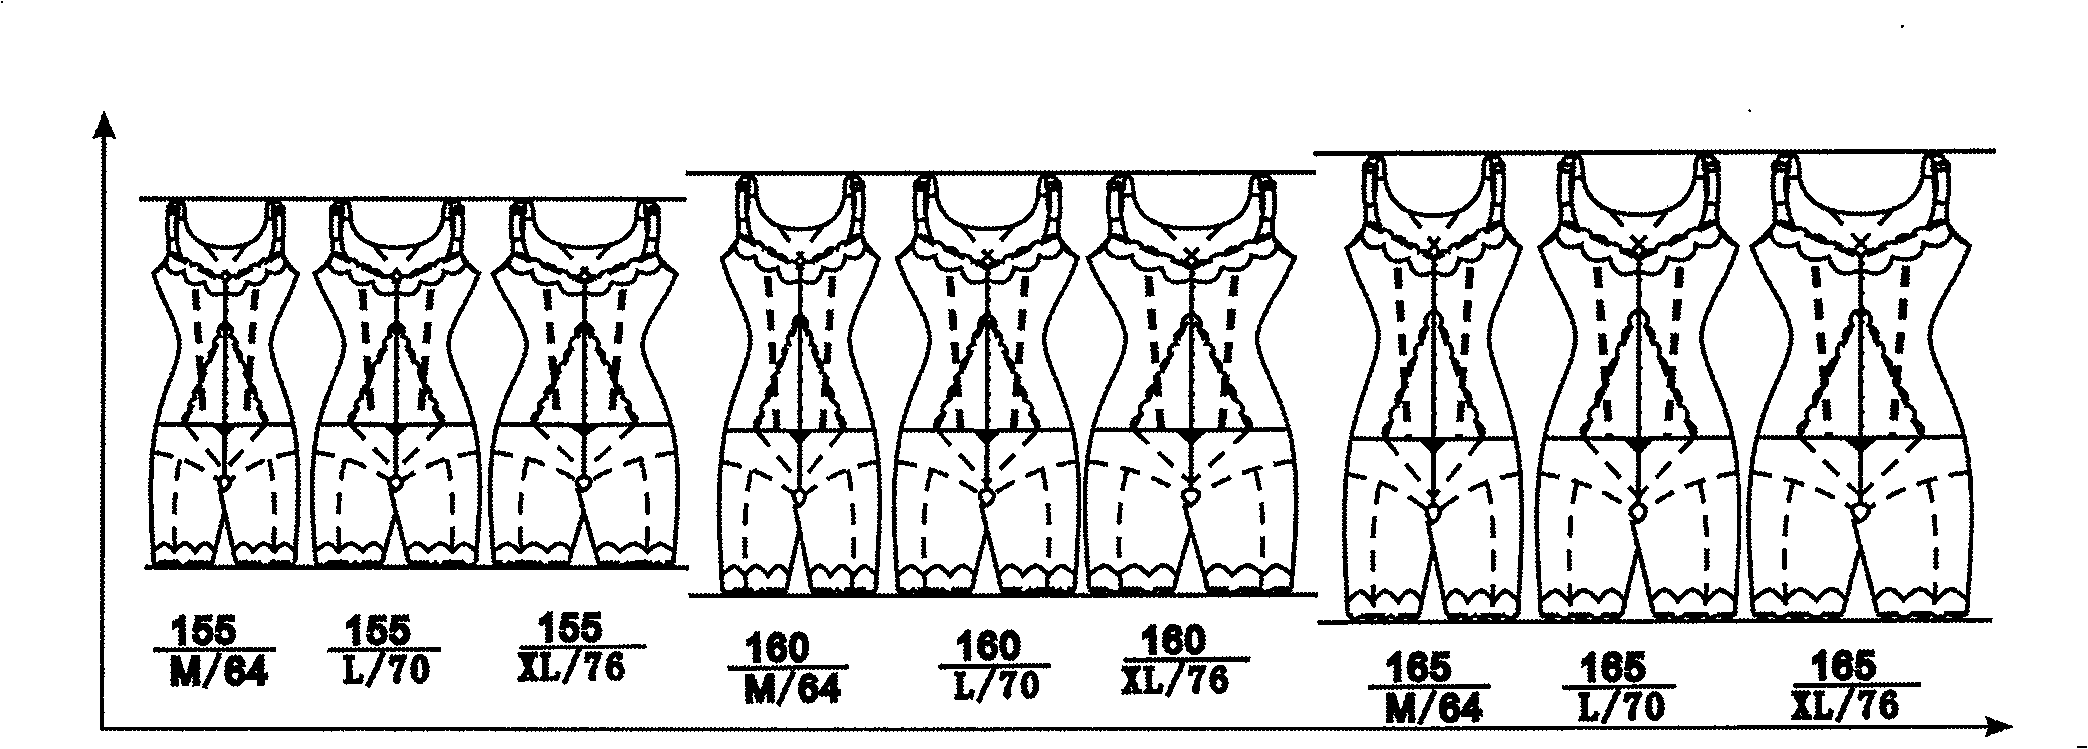 Grading method for women's underwear